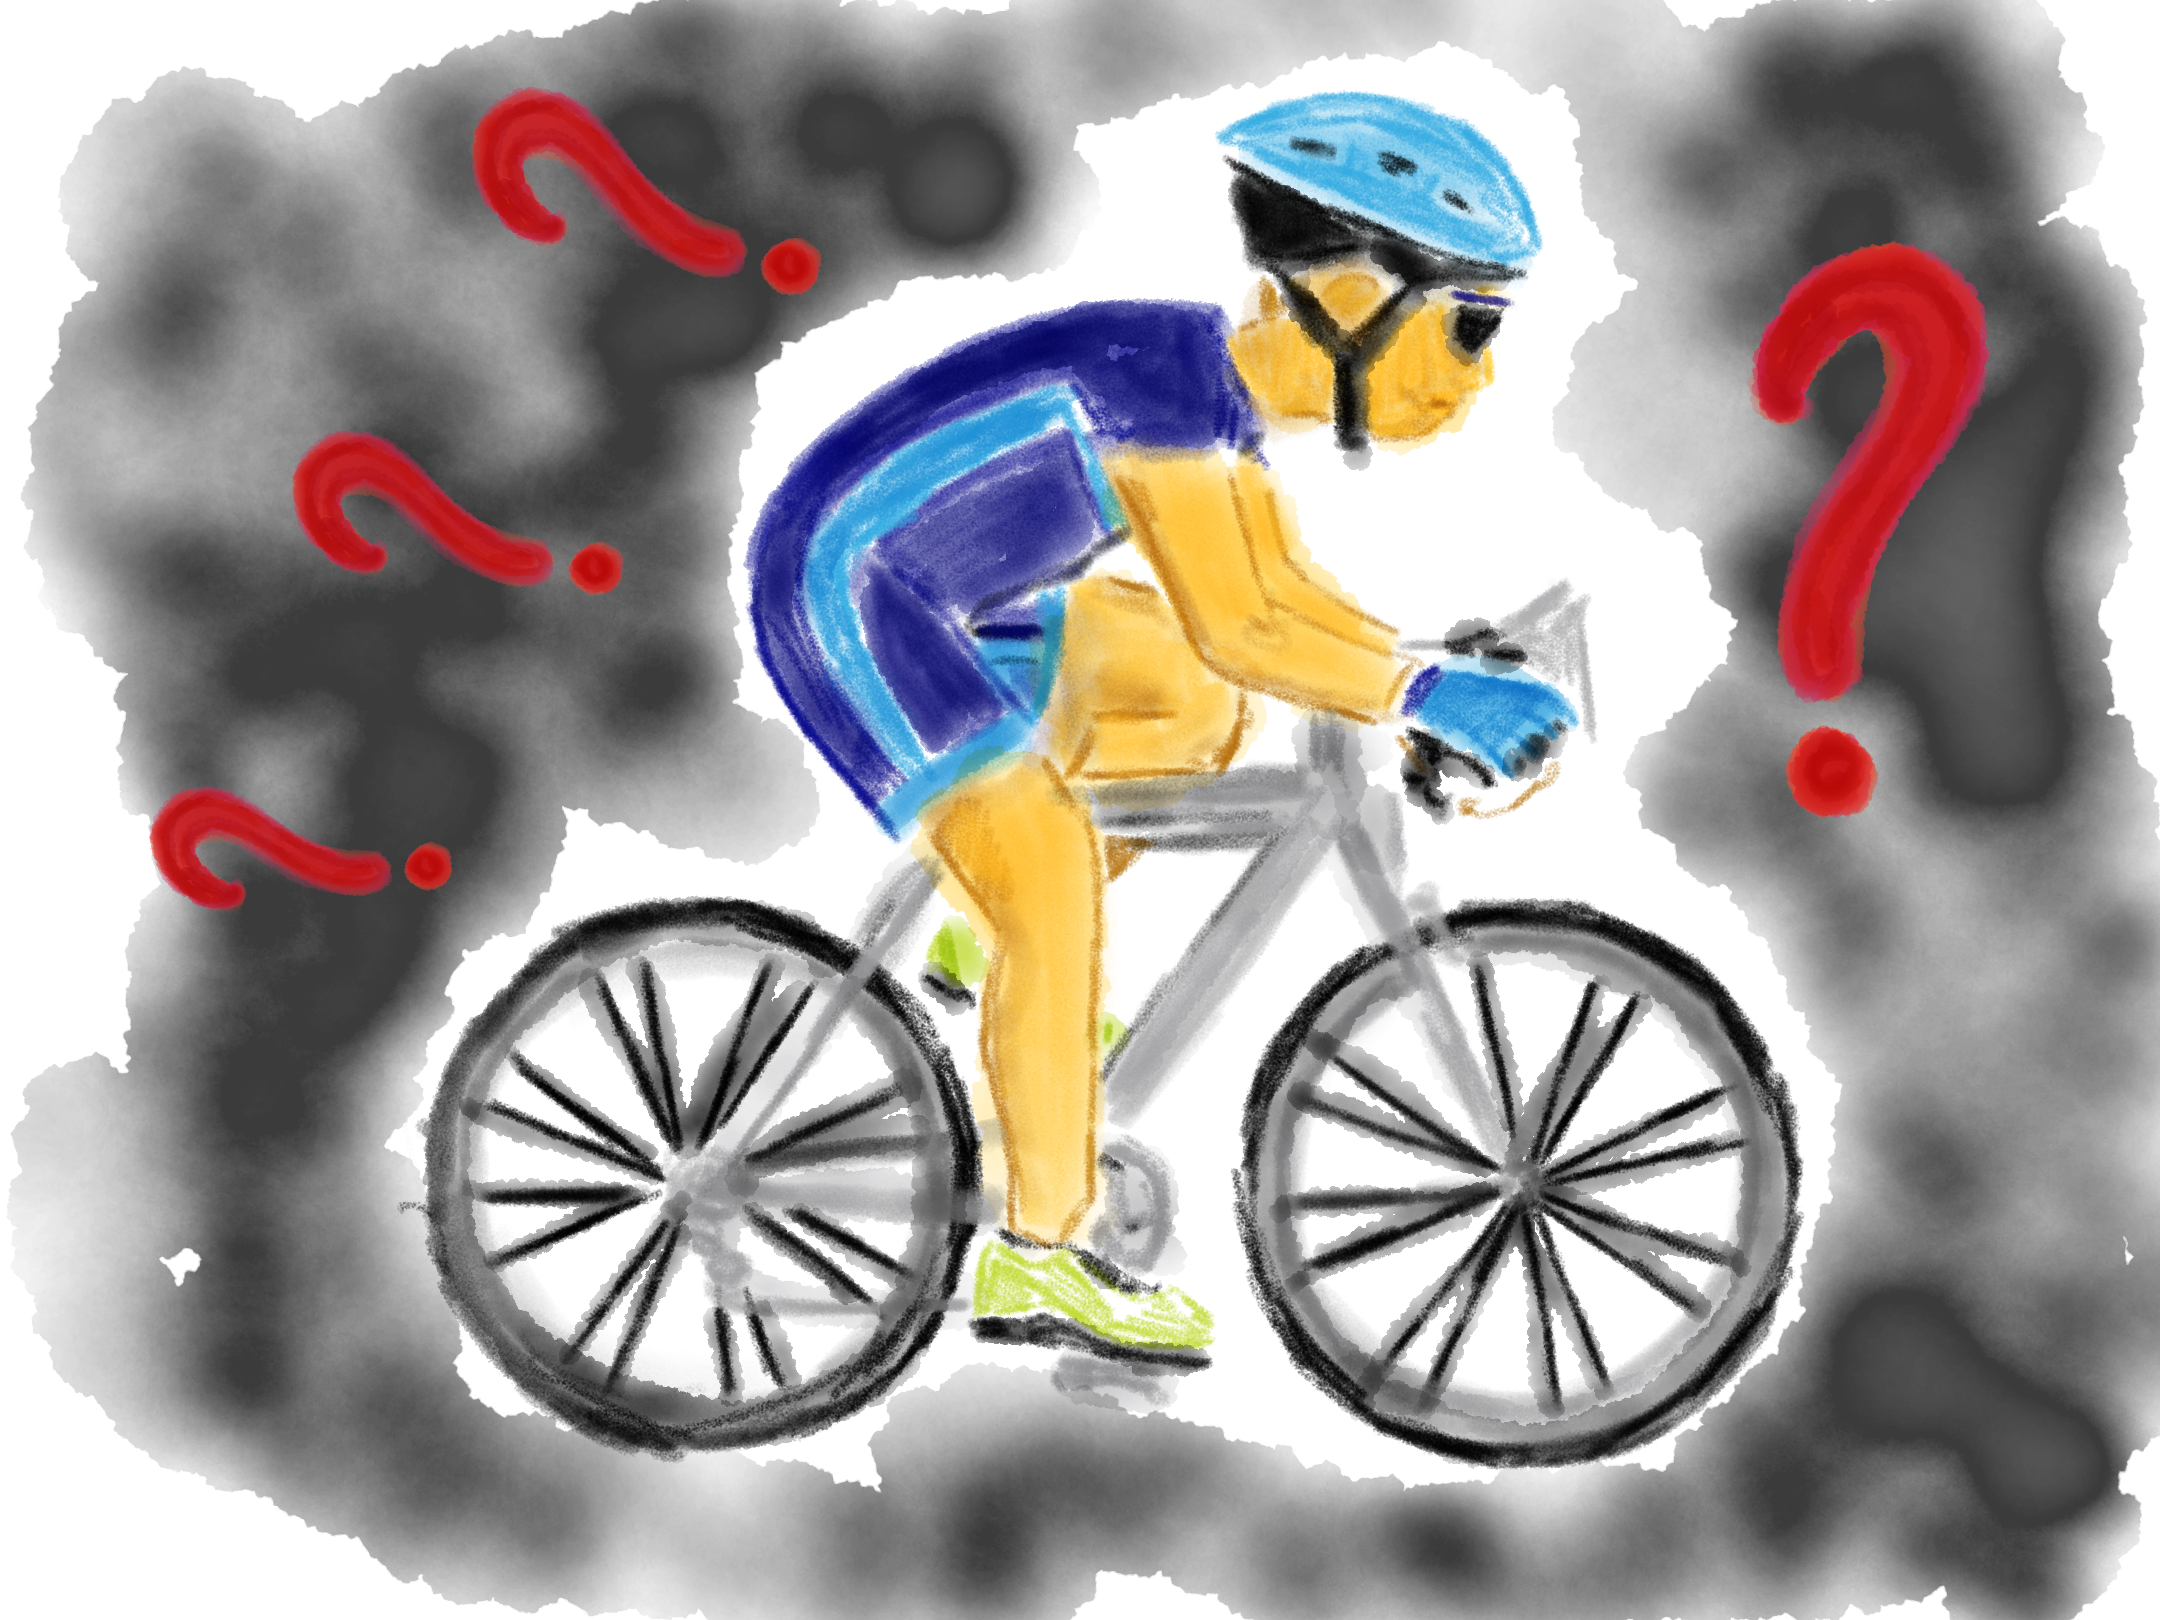 Tegning af en emoji med en cykelrytter med en masse spørgsmålstegn omkring ham